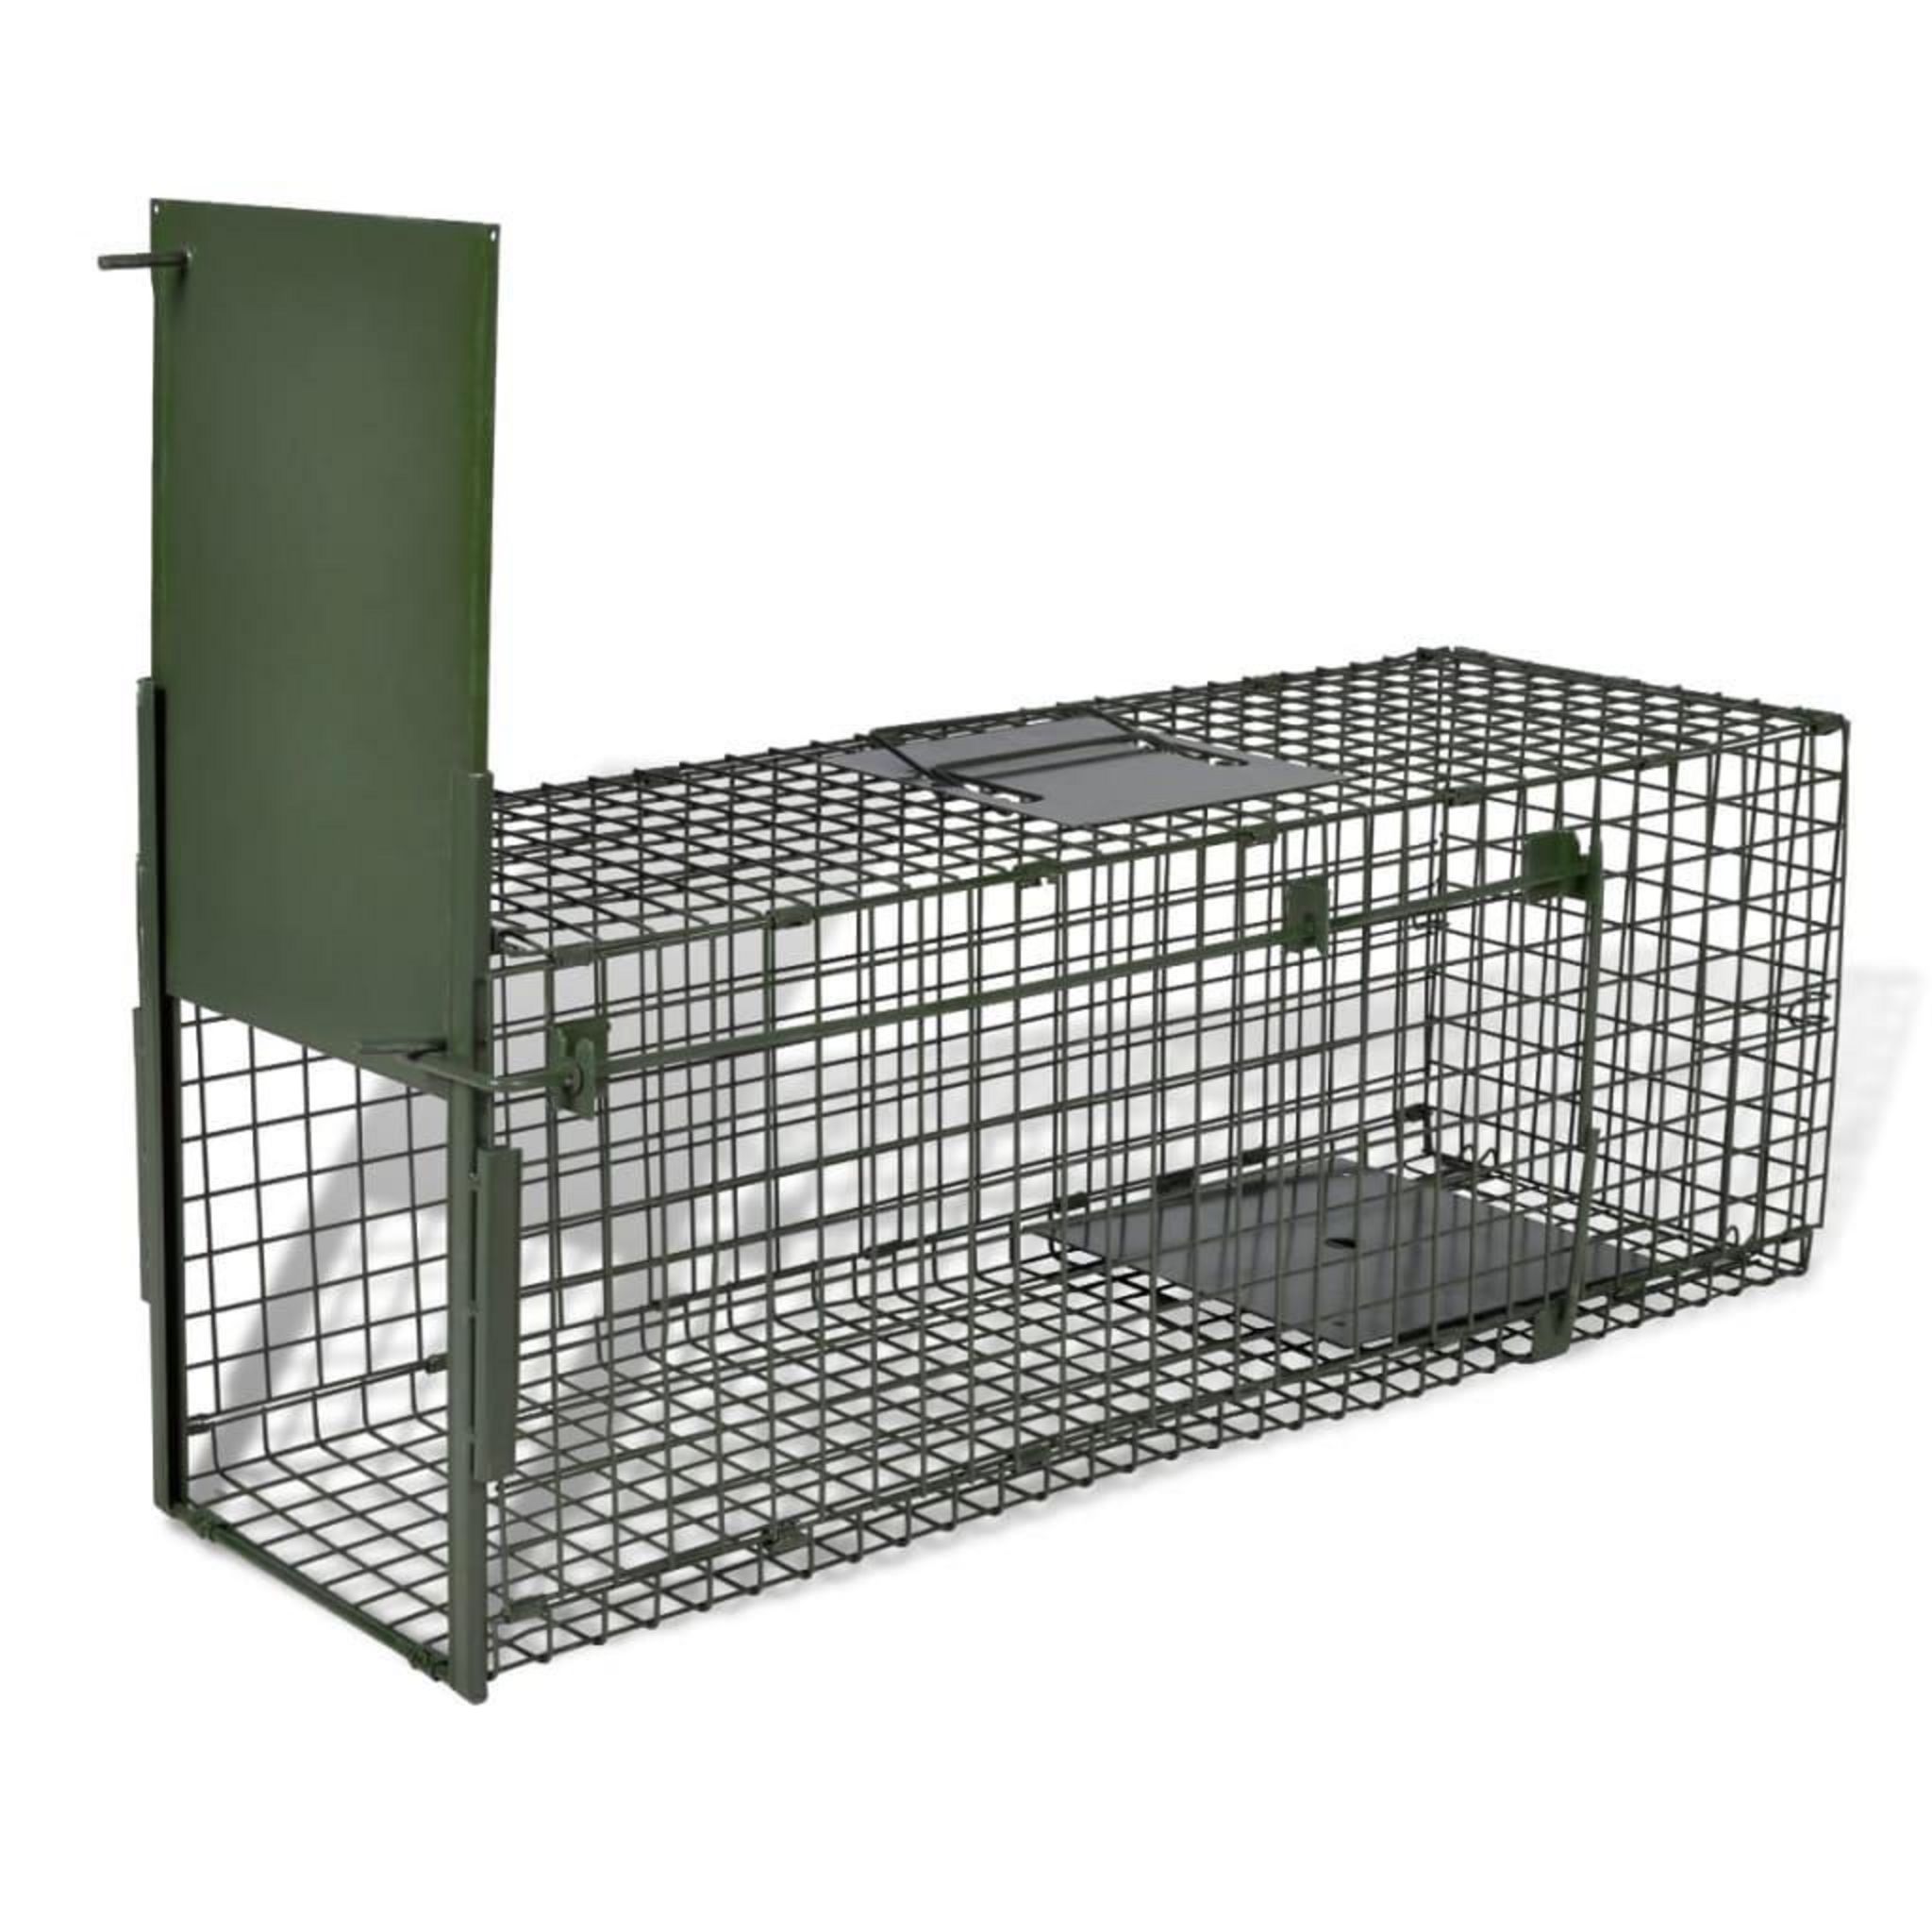 Piège de capture pliable pour petits animaux type lapin rat - 2 portes,  poignée - dim. 81L x 26l x 34H cm - acier